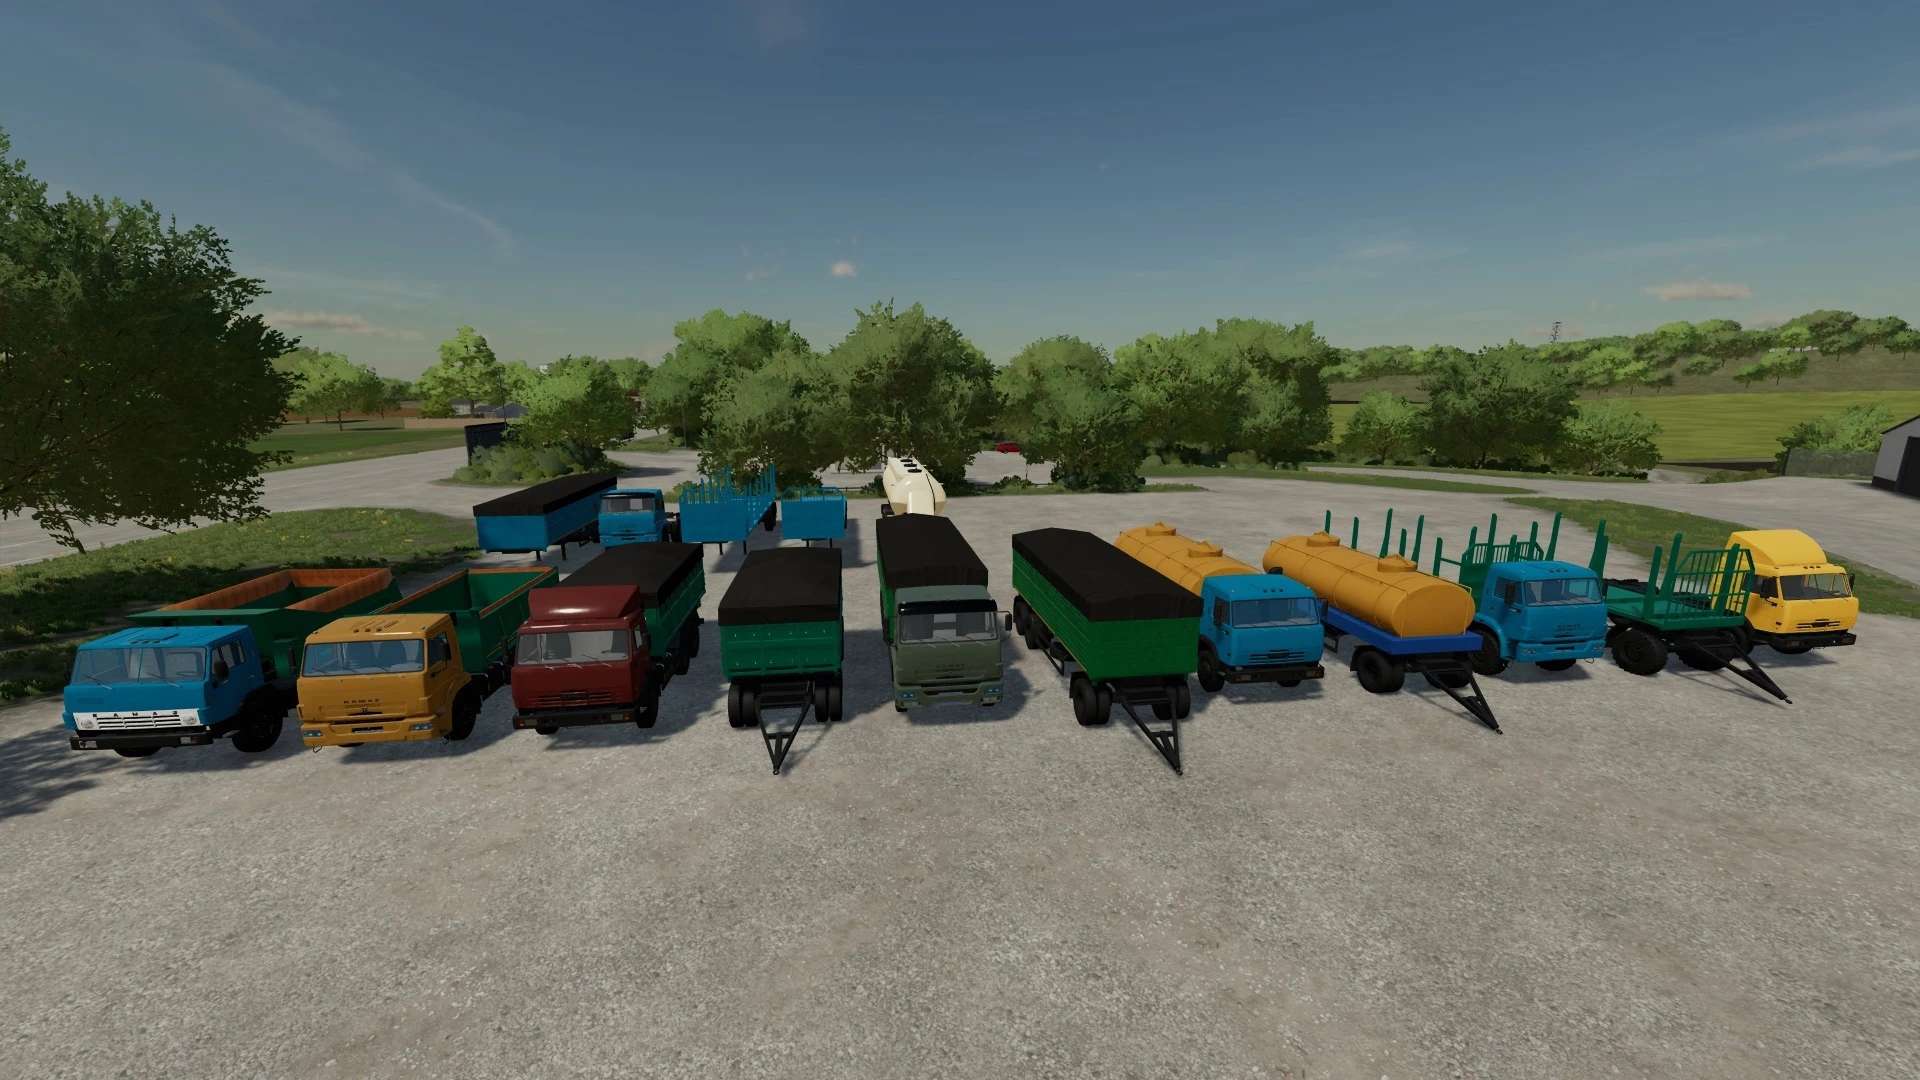 farming simulator 22 mods nederlands